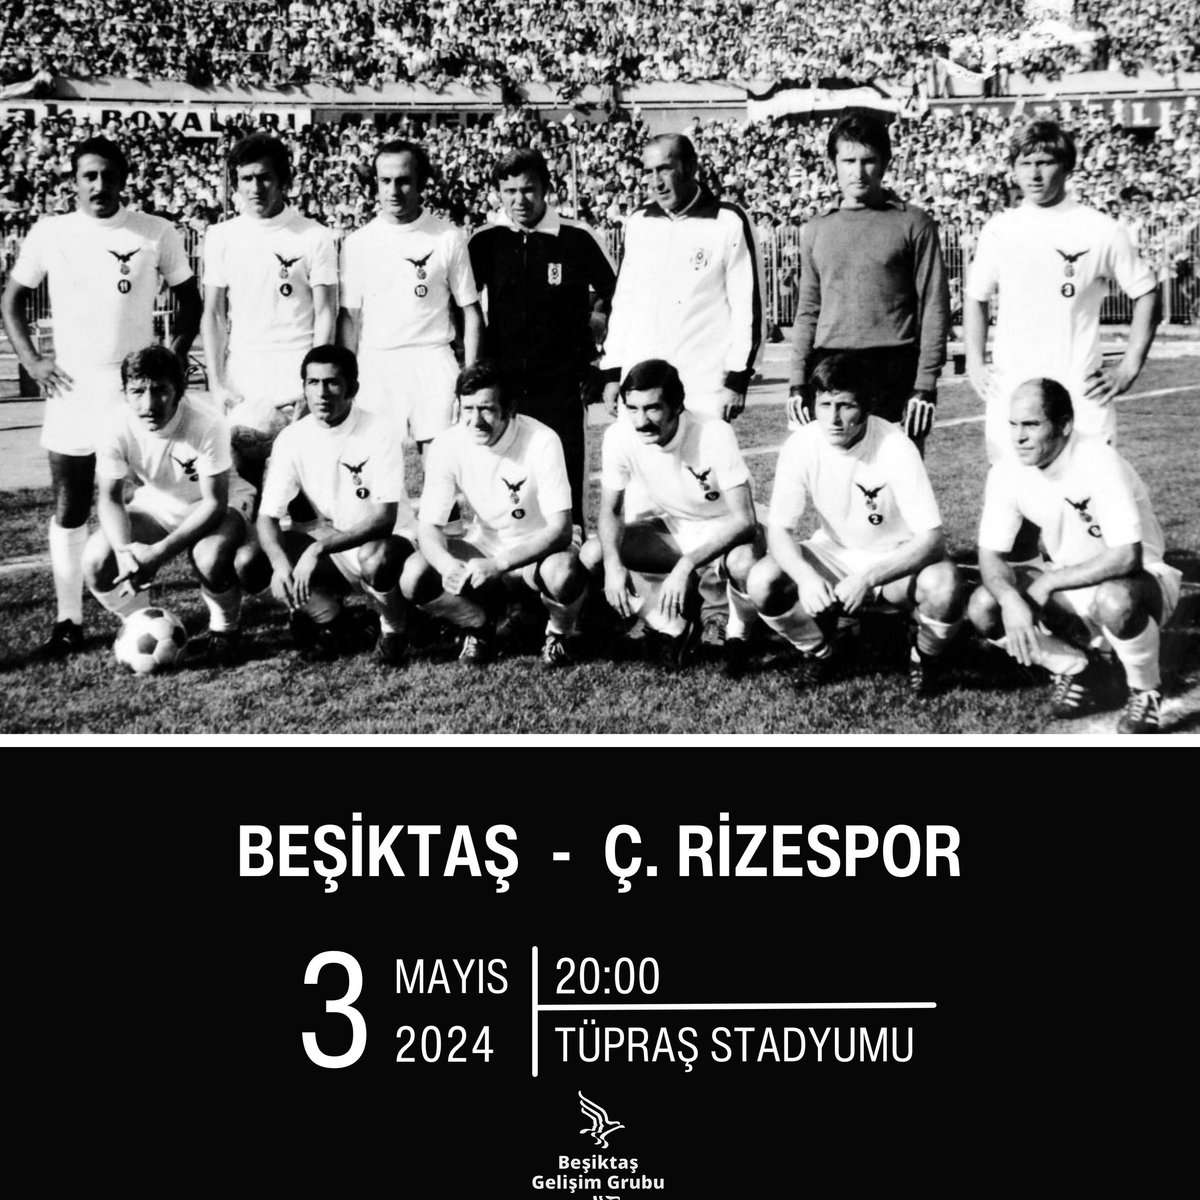 #BugünBeşiktaşınMaçıVar

Erkek Futbol A takımımıza,
bu akşam oynayacağı Çaykur Rizespor müsabakasında başarılar dileriz.

Yensen de yenilsen de, sonsuza kadar sevileceğini bil yeter!

#HaydıBastırBeşiktaş

#Beşiktaş
#BeşiktaşJK
#BeşiktaşBitmez
#BuSevdaBitmez
#BeşiktaşGelişimGrubu